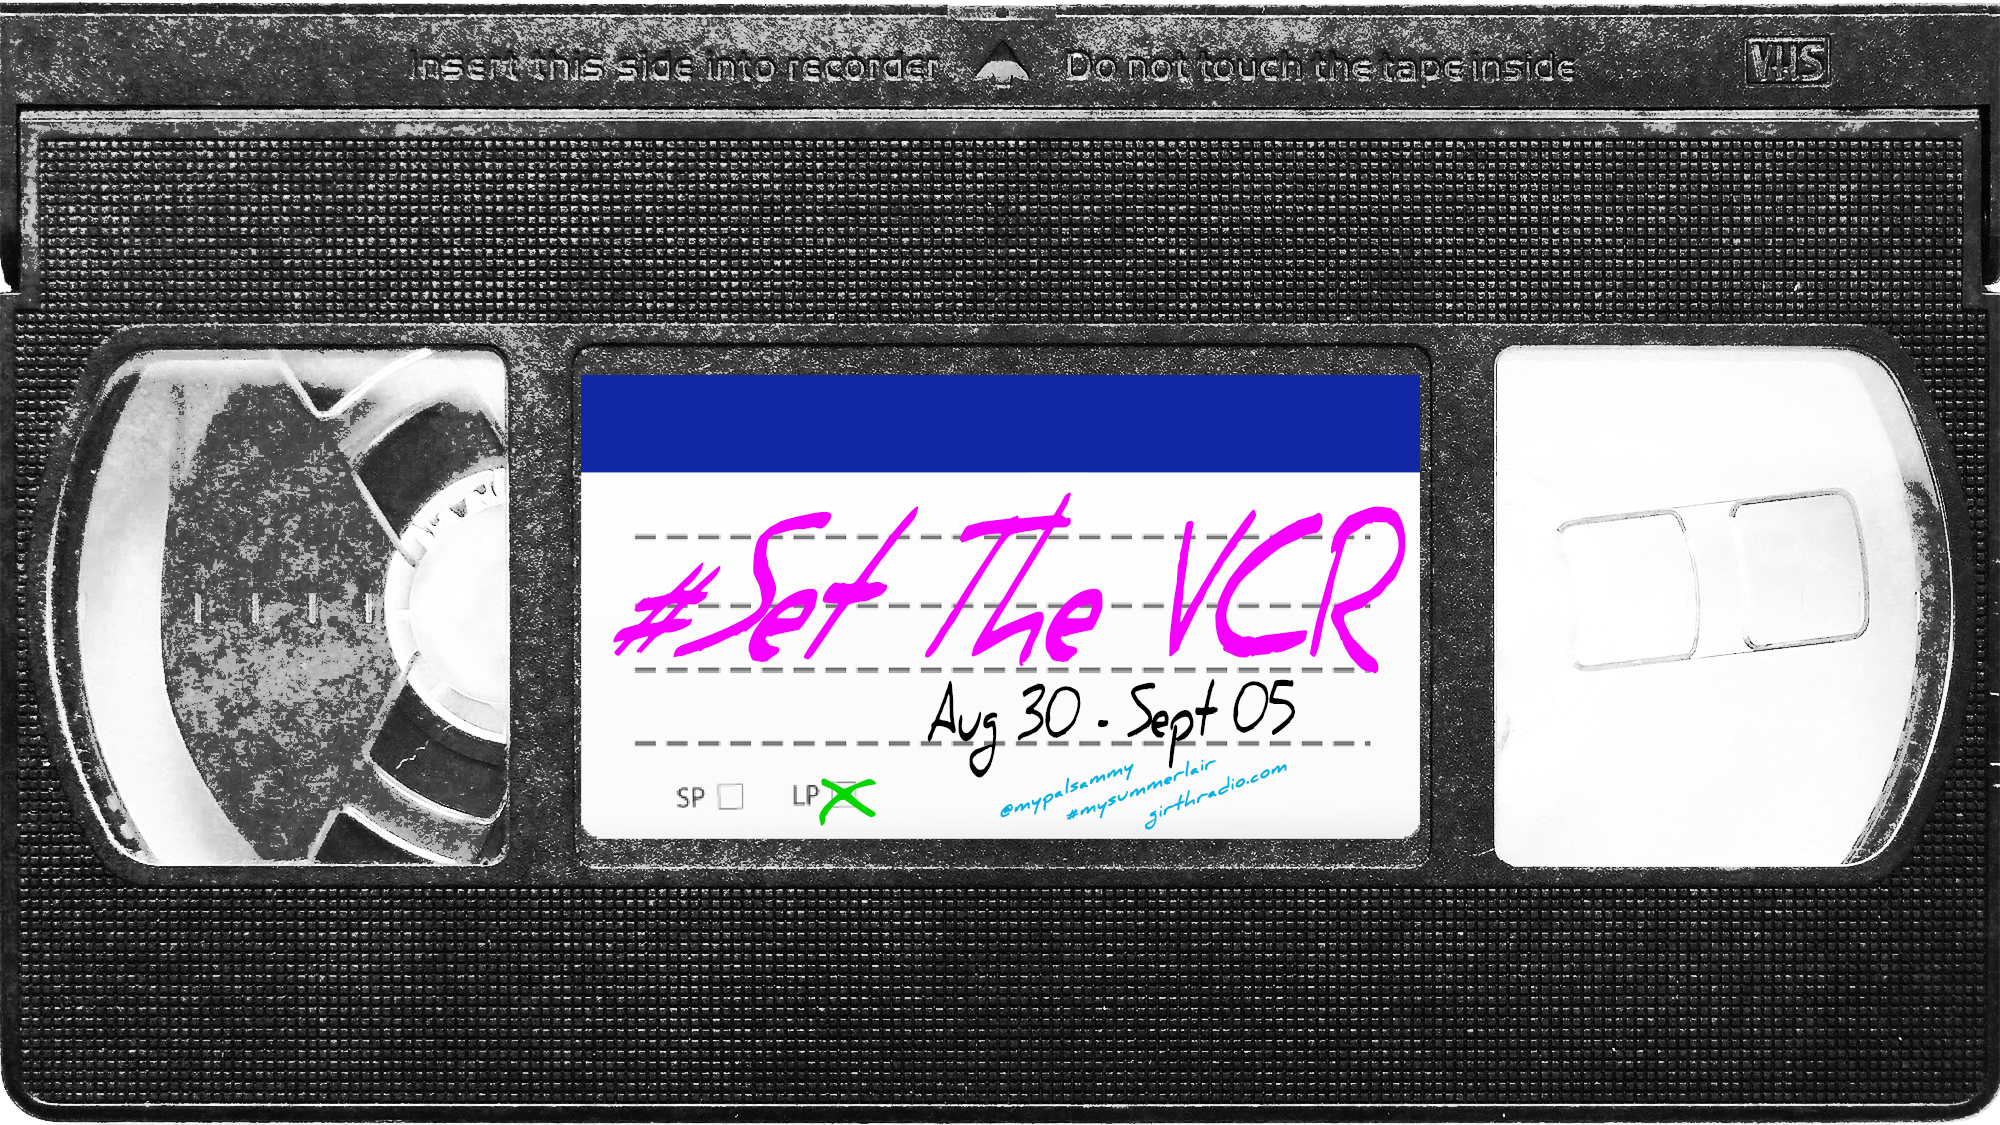 #SetTheVCR: August 30-September 5, 2020